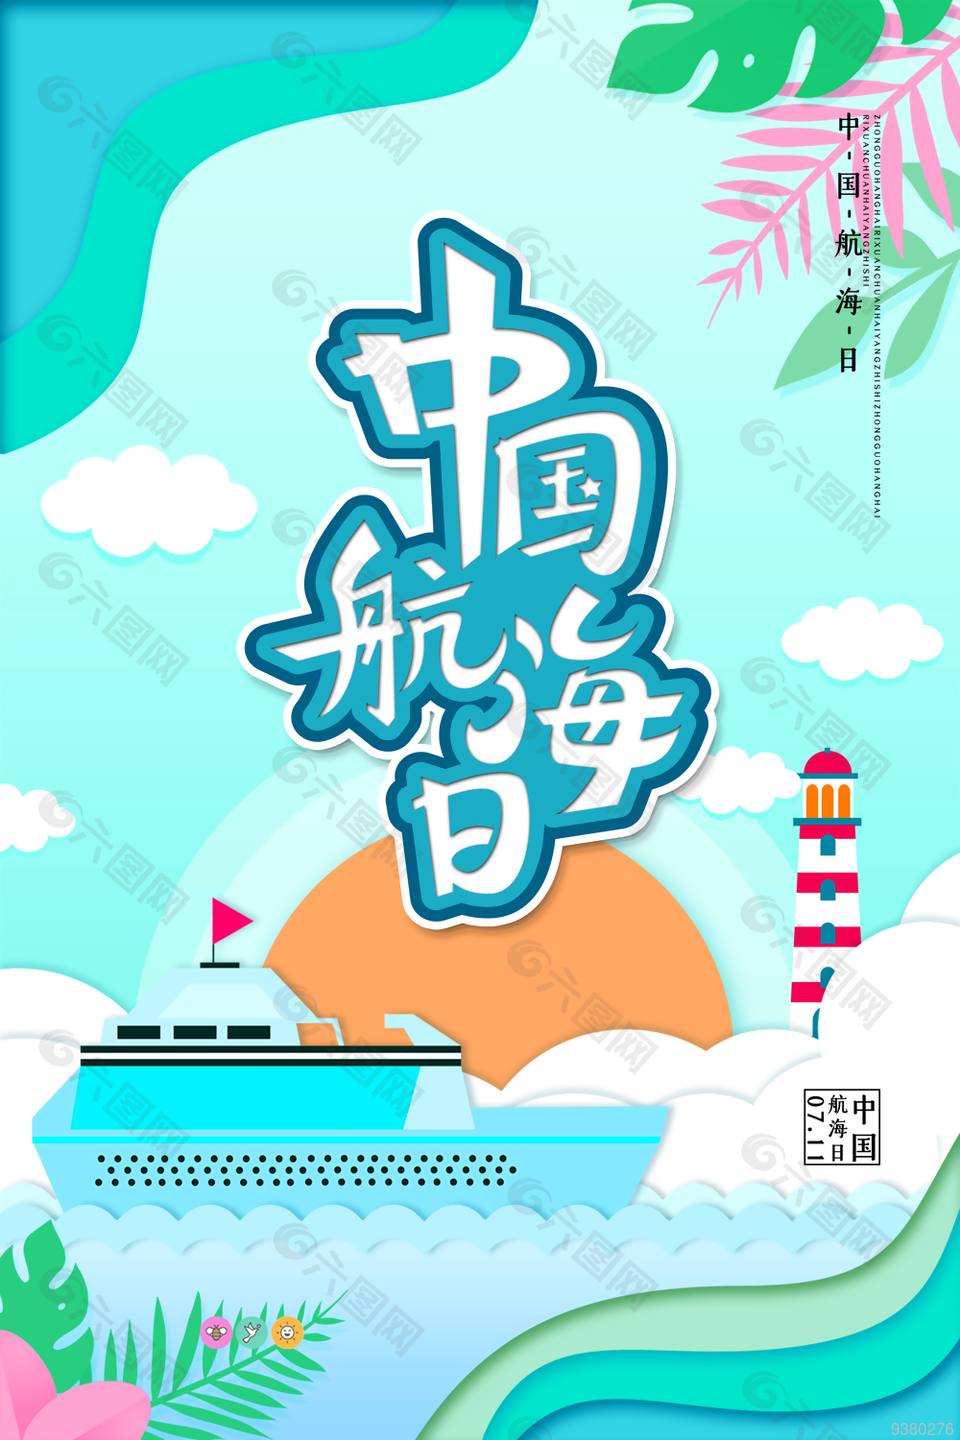 卡通中国航海日图片大全